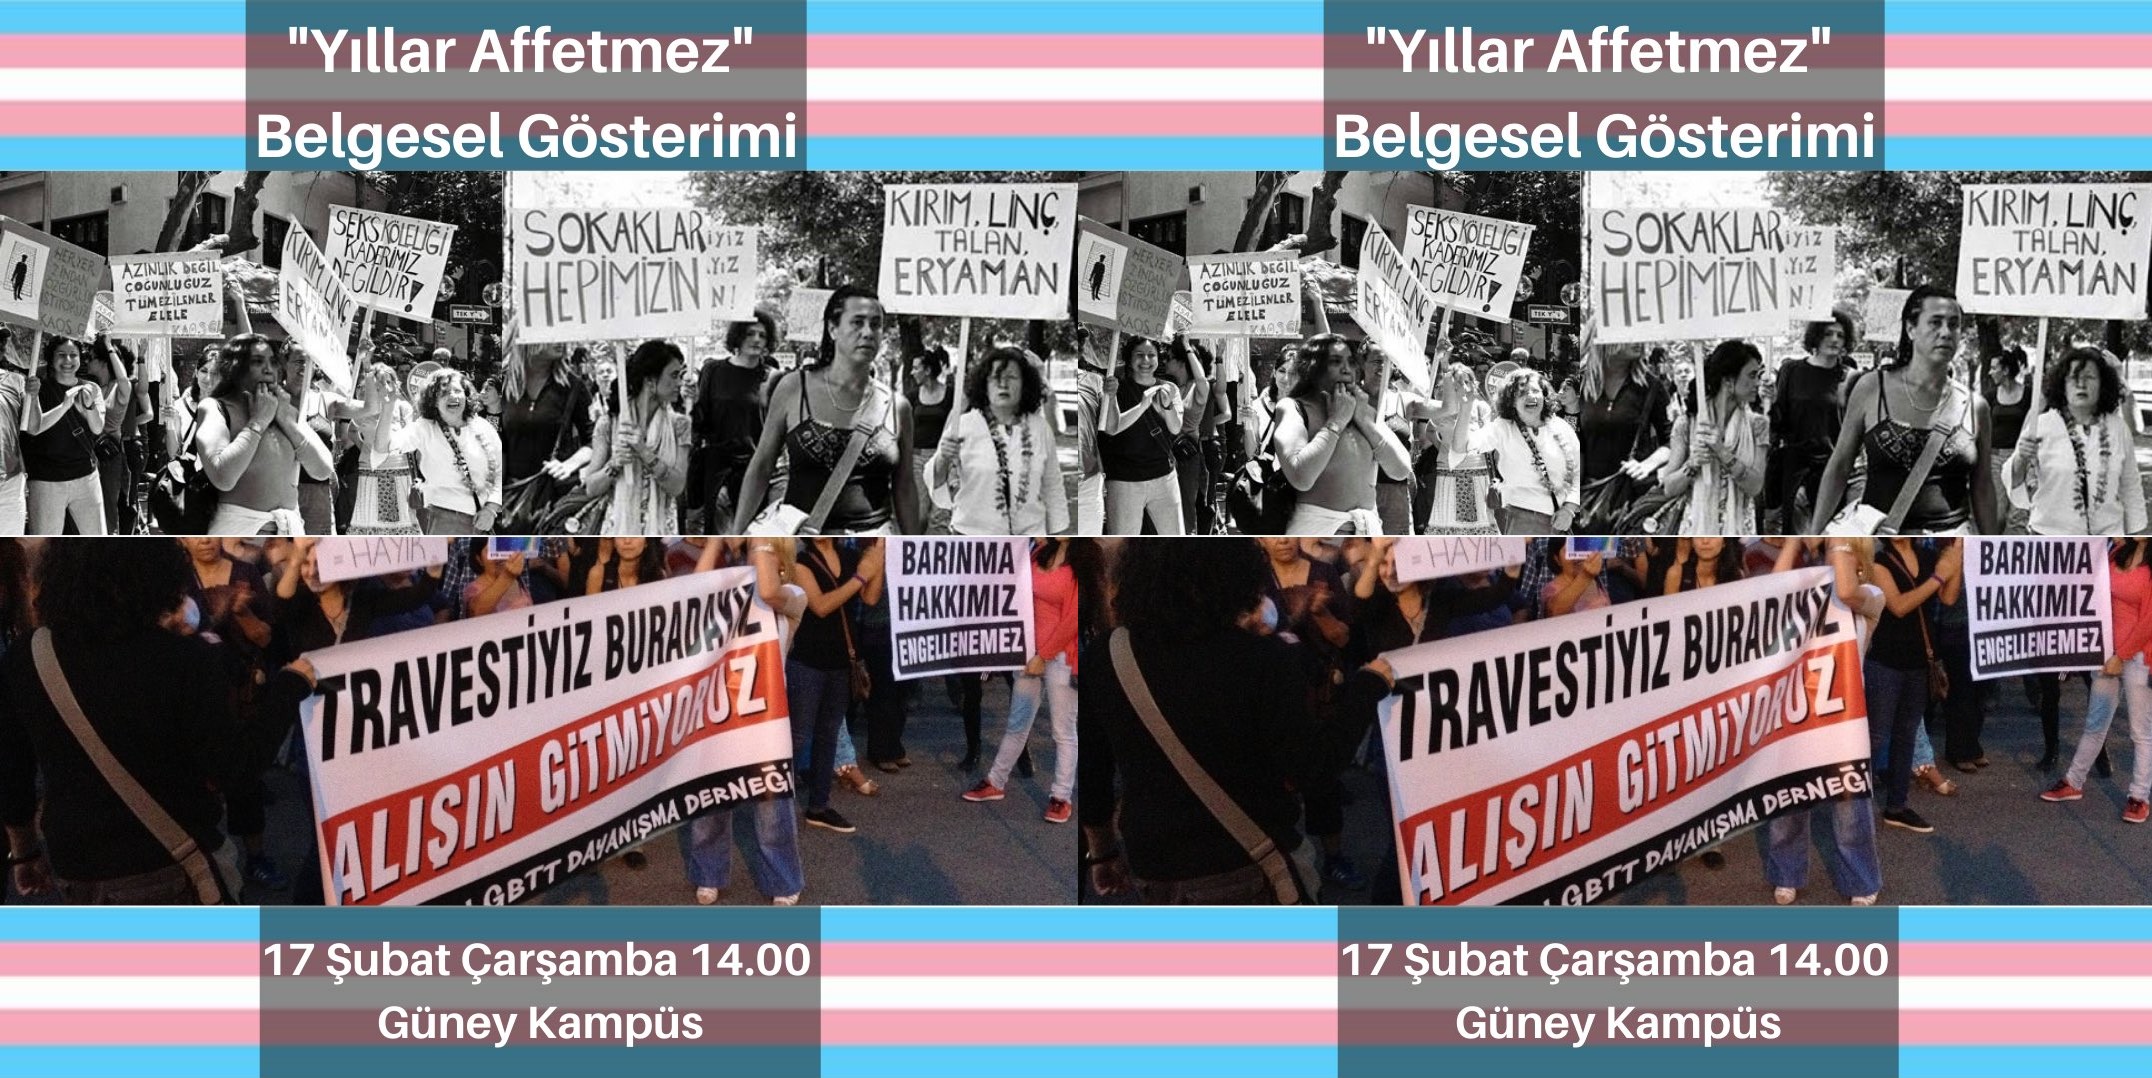 BÜLGBTİ+ “Yıllar Affetmez” serisini izlemeye çağırıyor Kaos GL - LGBTİ+ Haber Portalı